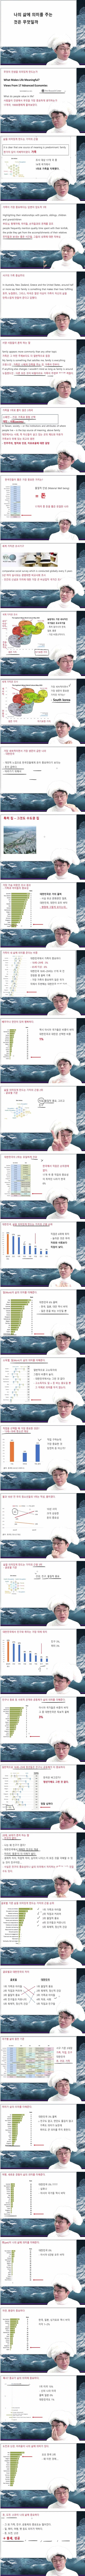 한국인이 생각하는 삶의 가치 - 3